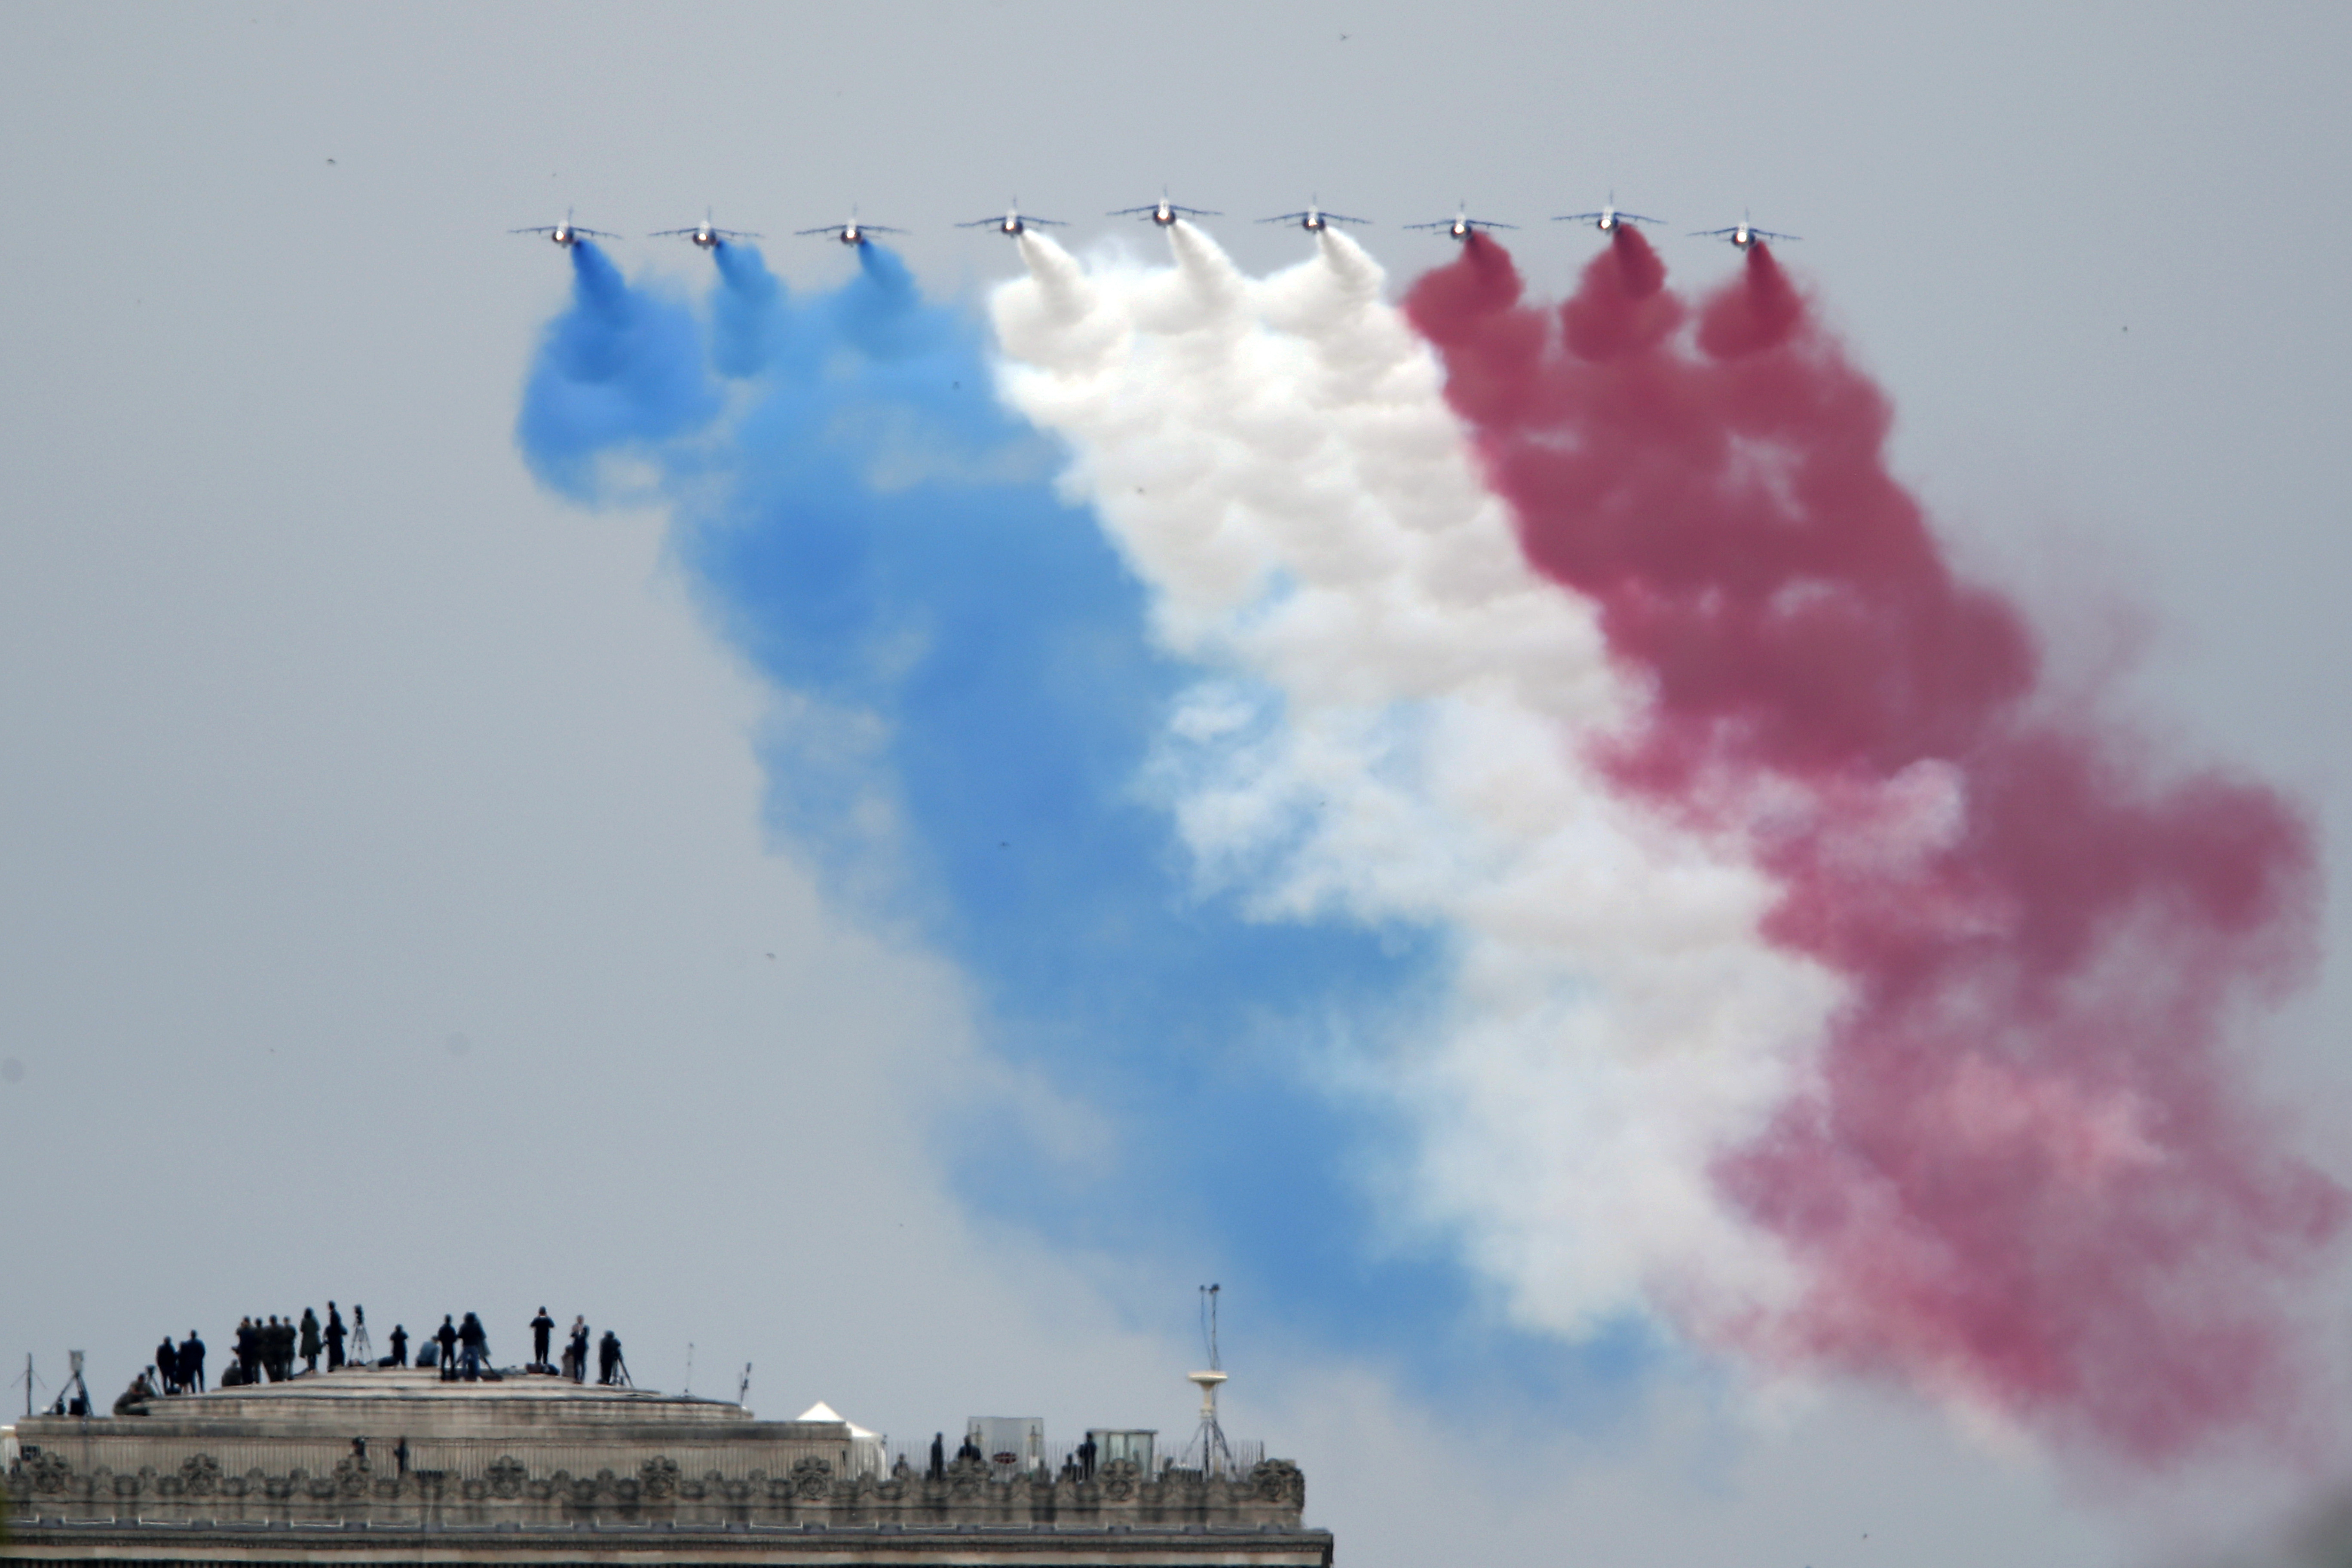 Aeronaves da Patrouille de France, o esquadrão de demonstração e acrobacia aérea da Força Aérea Francesa, sobrevoam o topo do Arco do Triunfo, em Paris, na França,   durante a celebração do Dia da Bastilha